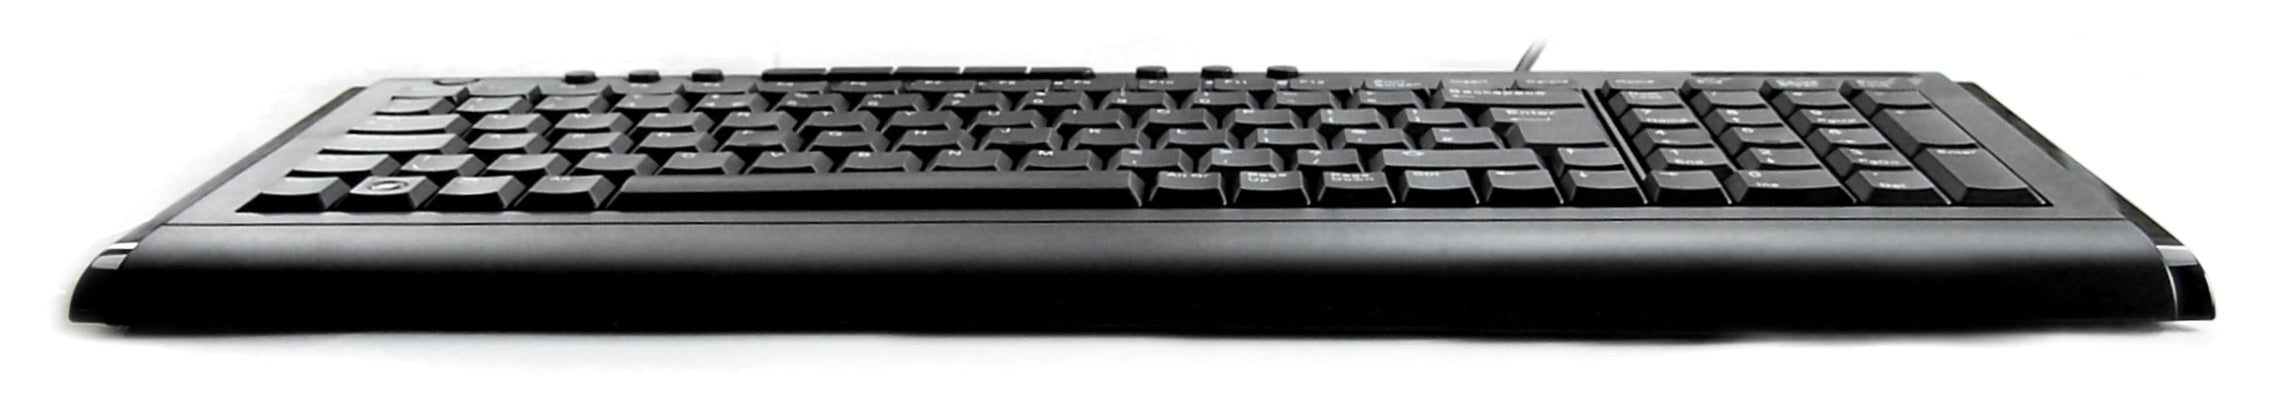 Accuratus 2200 - Clavier multimédia USB de taille compacte avec style noir brillant